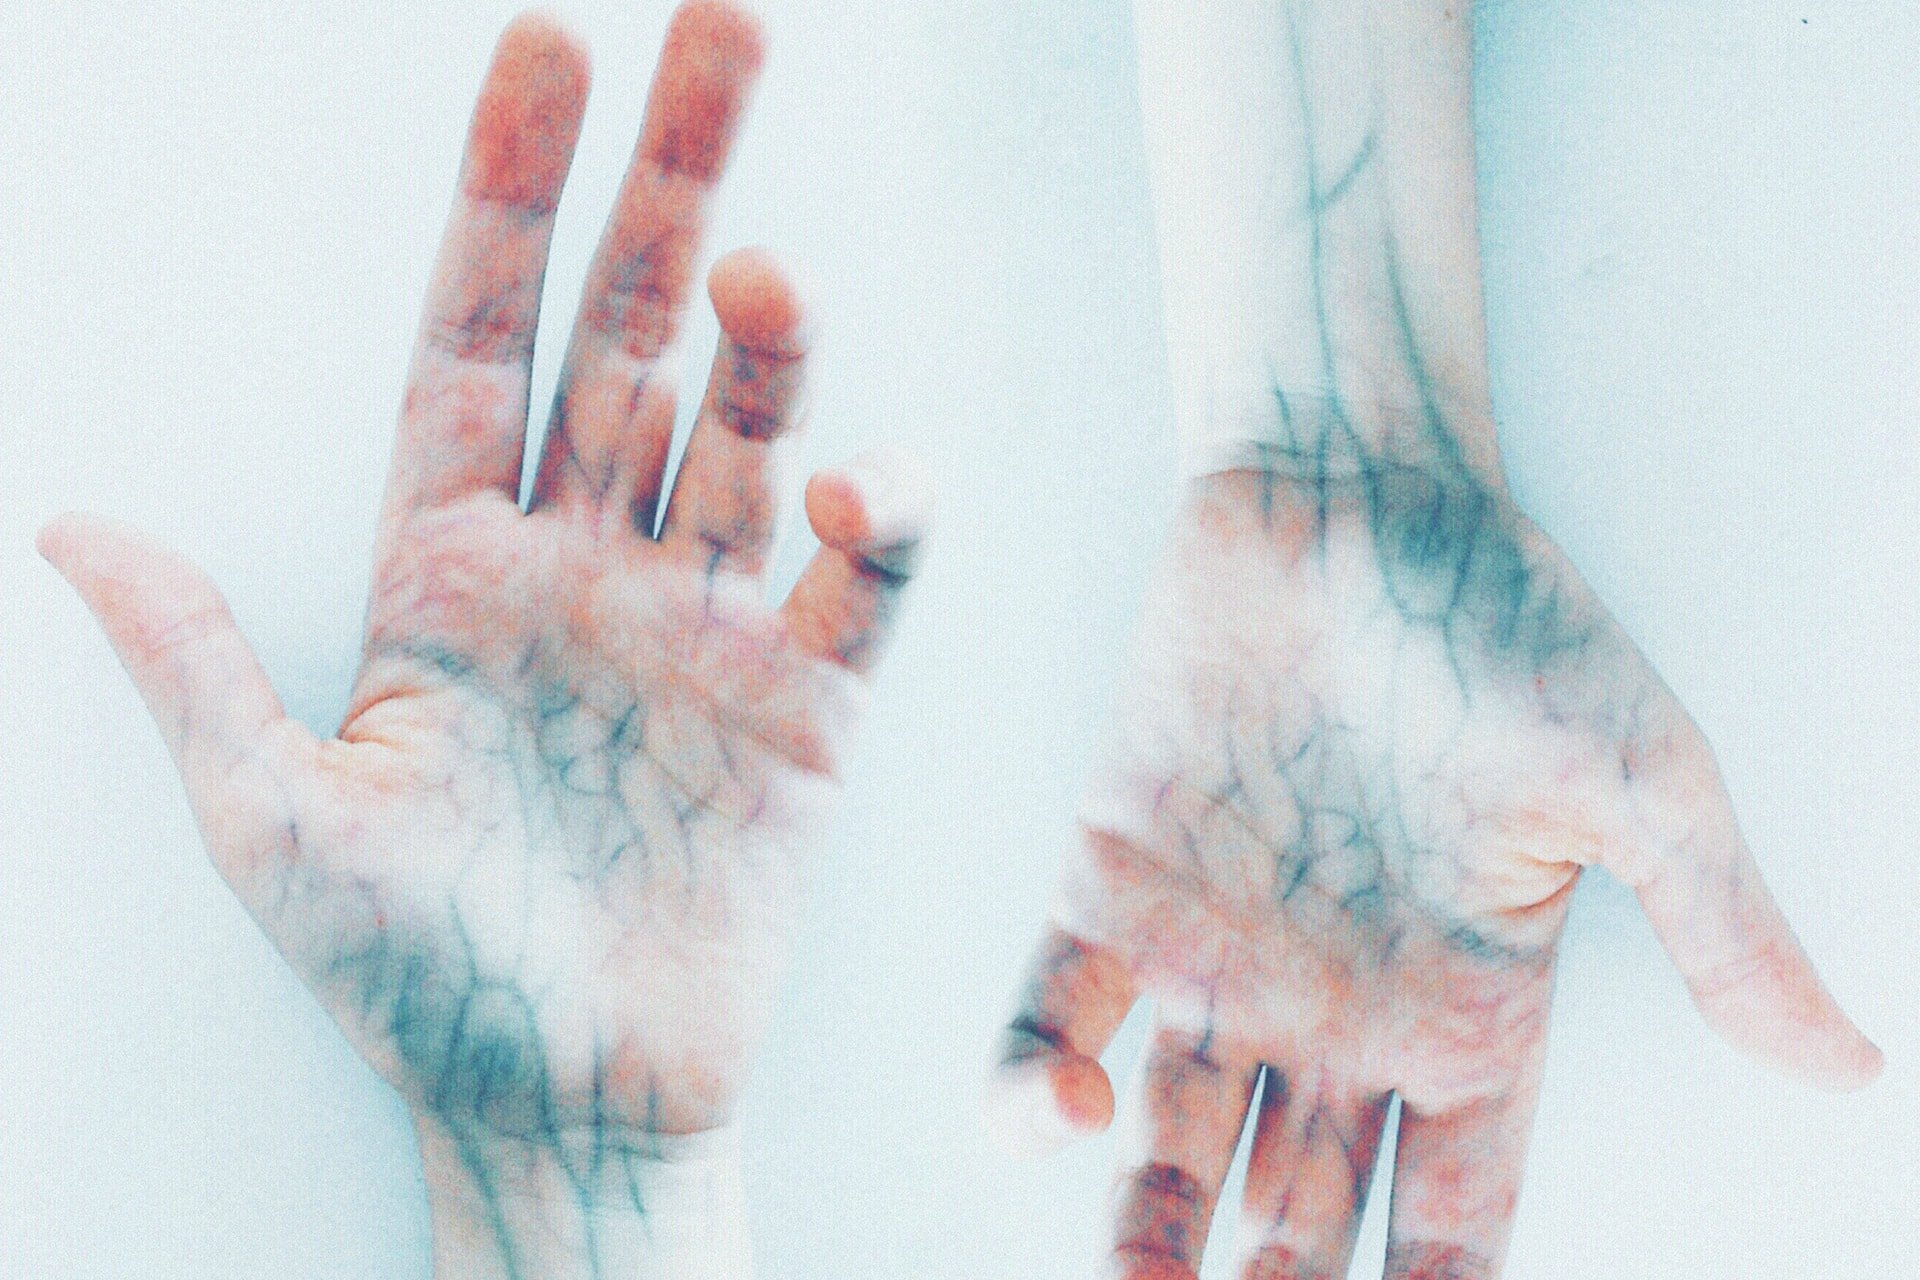 2 ruky, na ktorých vidieť modré žily